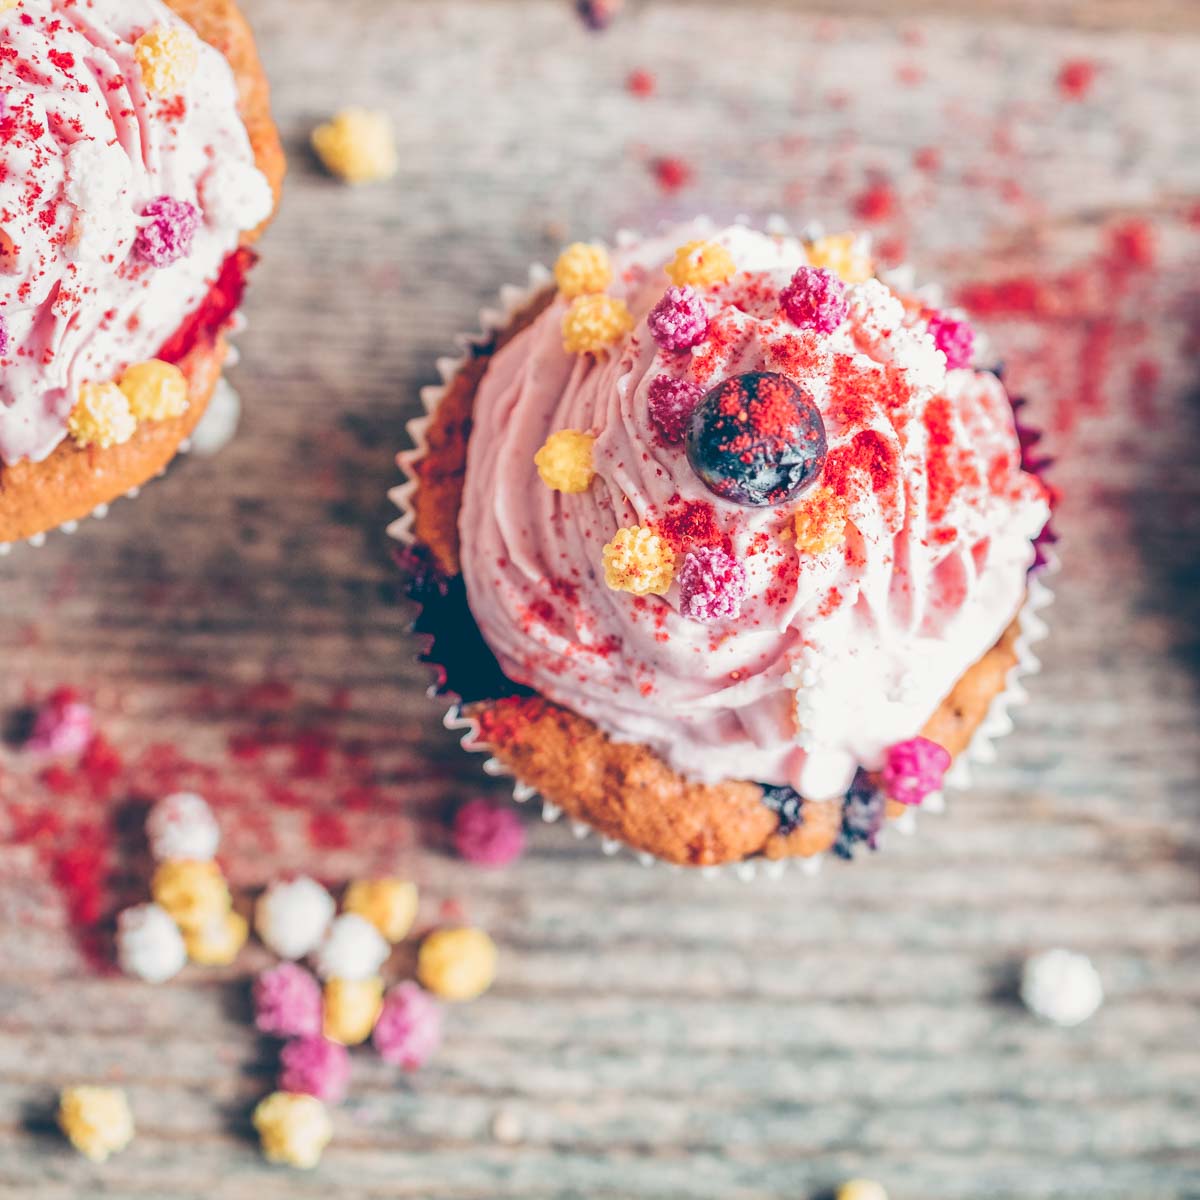 Vegan berry cupcake